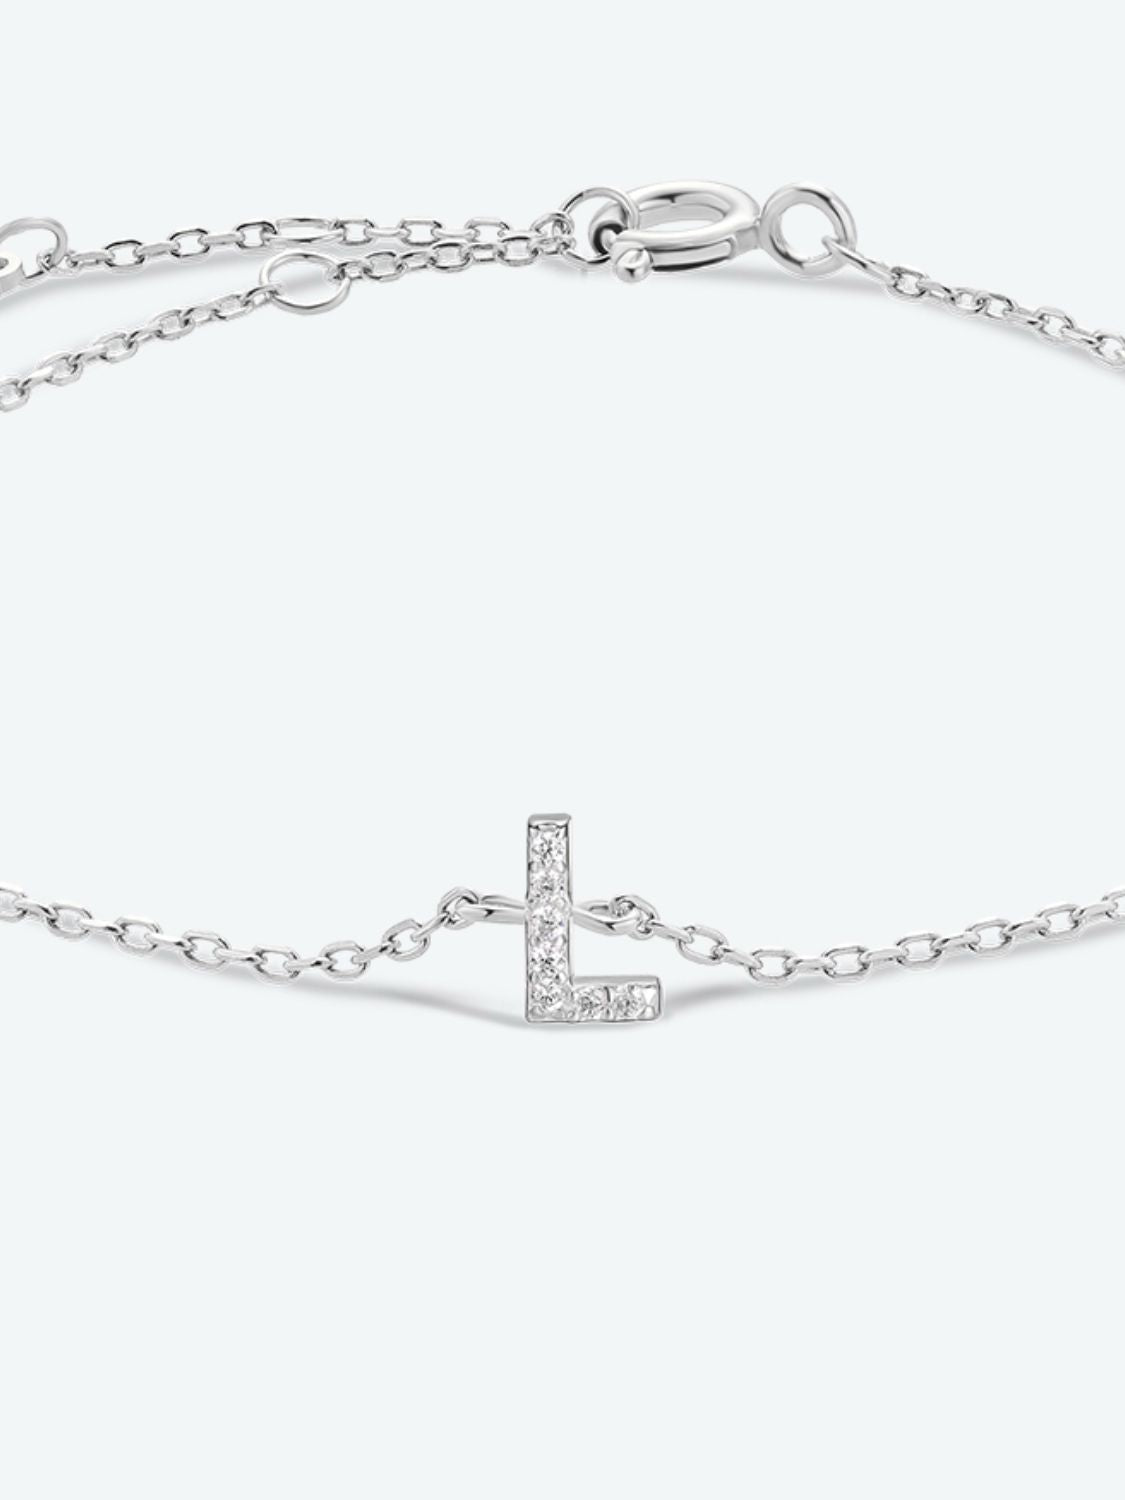 L To P Zircon 925 Sterling Silver Bracelet - Women’s Jewelry - Bracelets - 6 - 2024